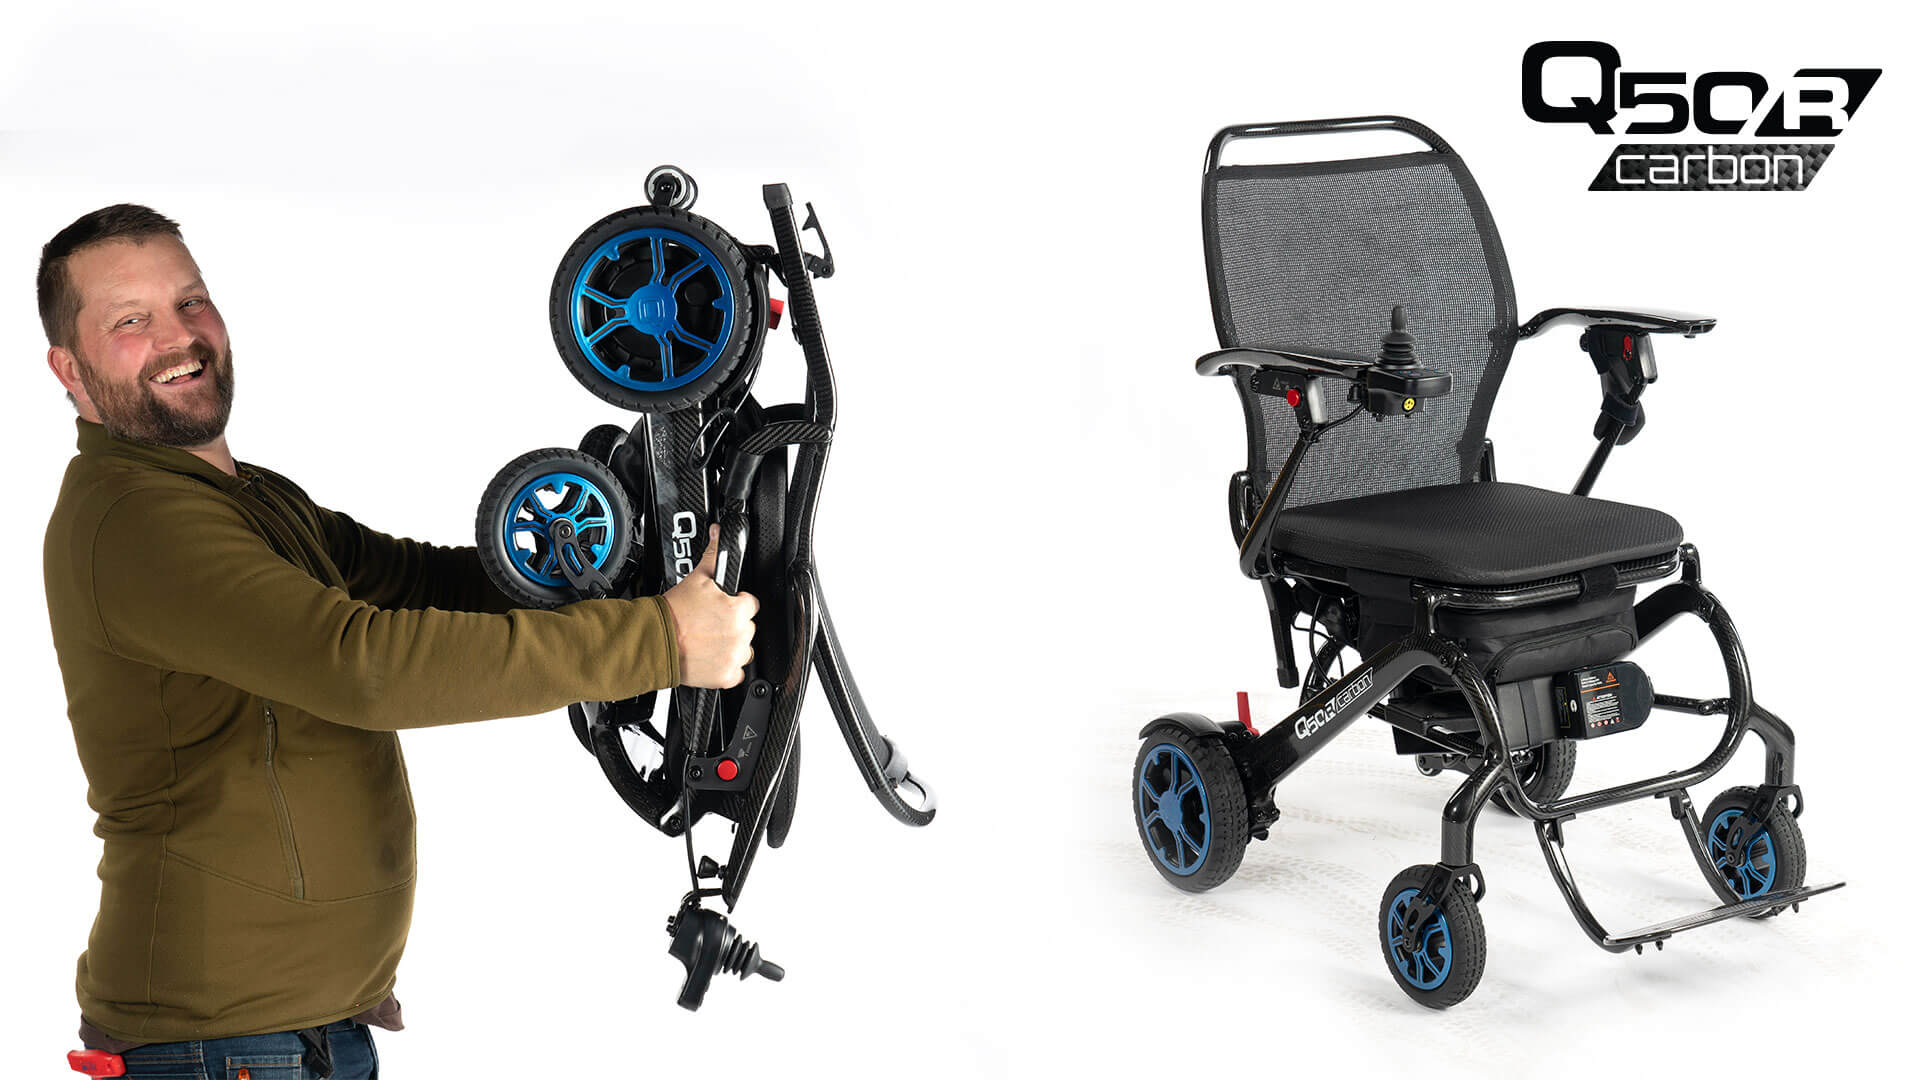 Endelig! En elektrisk rullestol som veier 14,6kg!